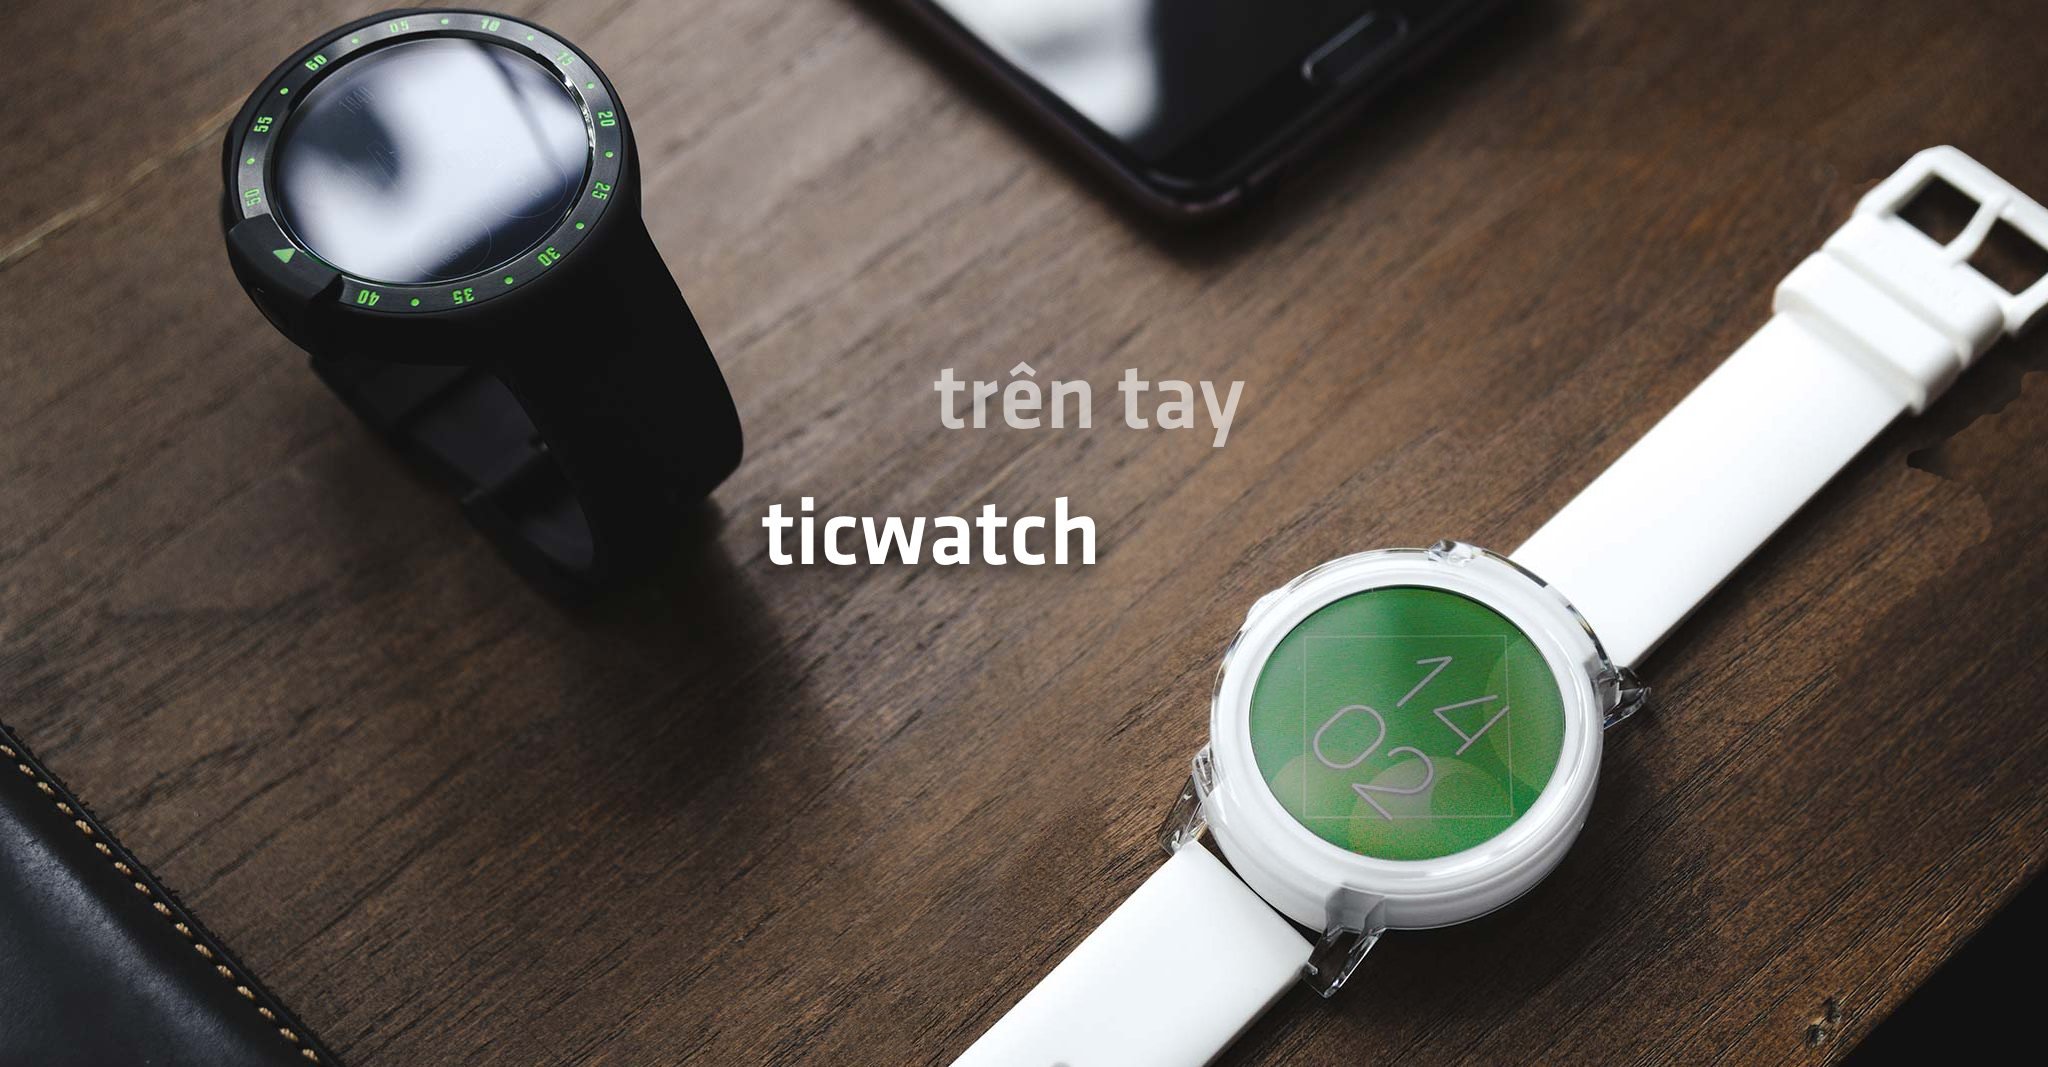 Trên tay Ticwatch S và E: Chạy WearOS, thiết kế đẹp, giá dễ mua